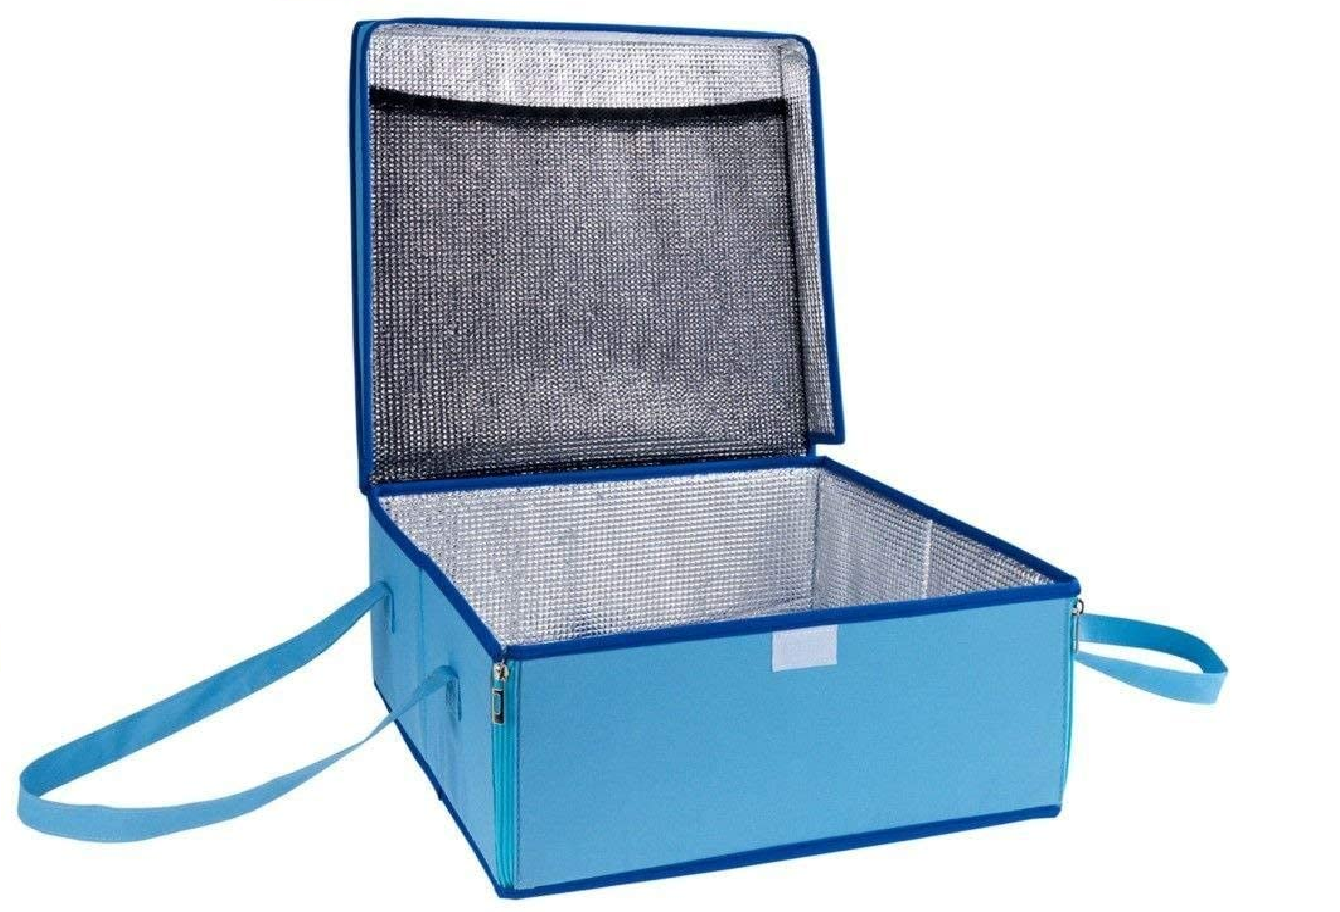 Transport-Kühltasche - Thermotasche für Kuchen, Torten, Salat, Fleisch, Polyester, 38 x 17 x 38 cm, Blau